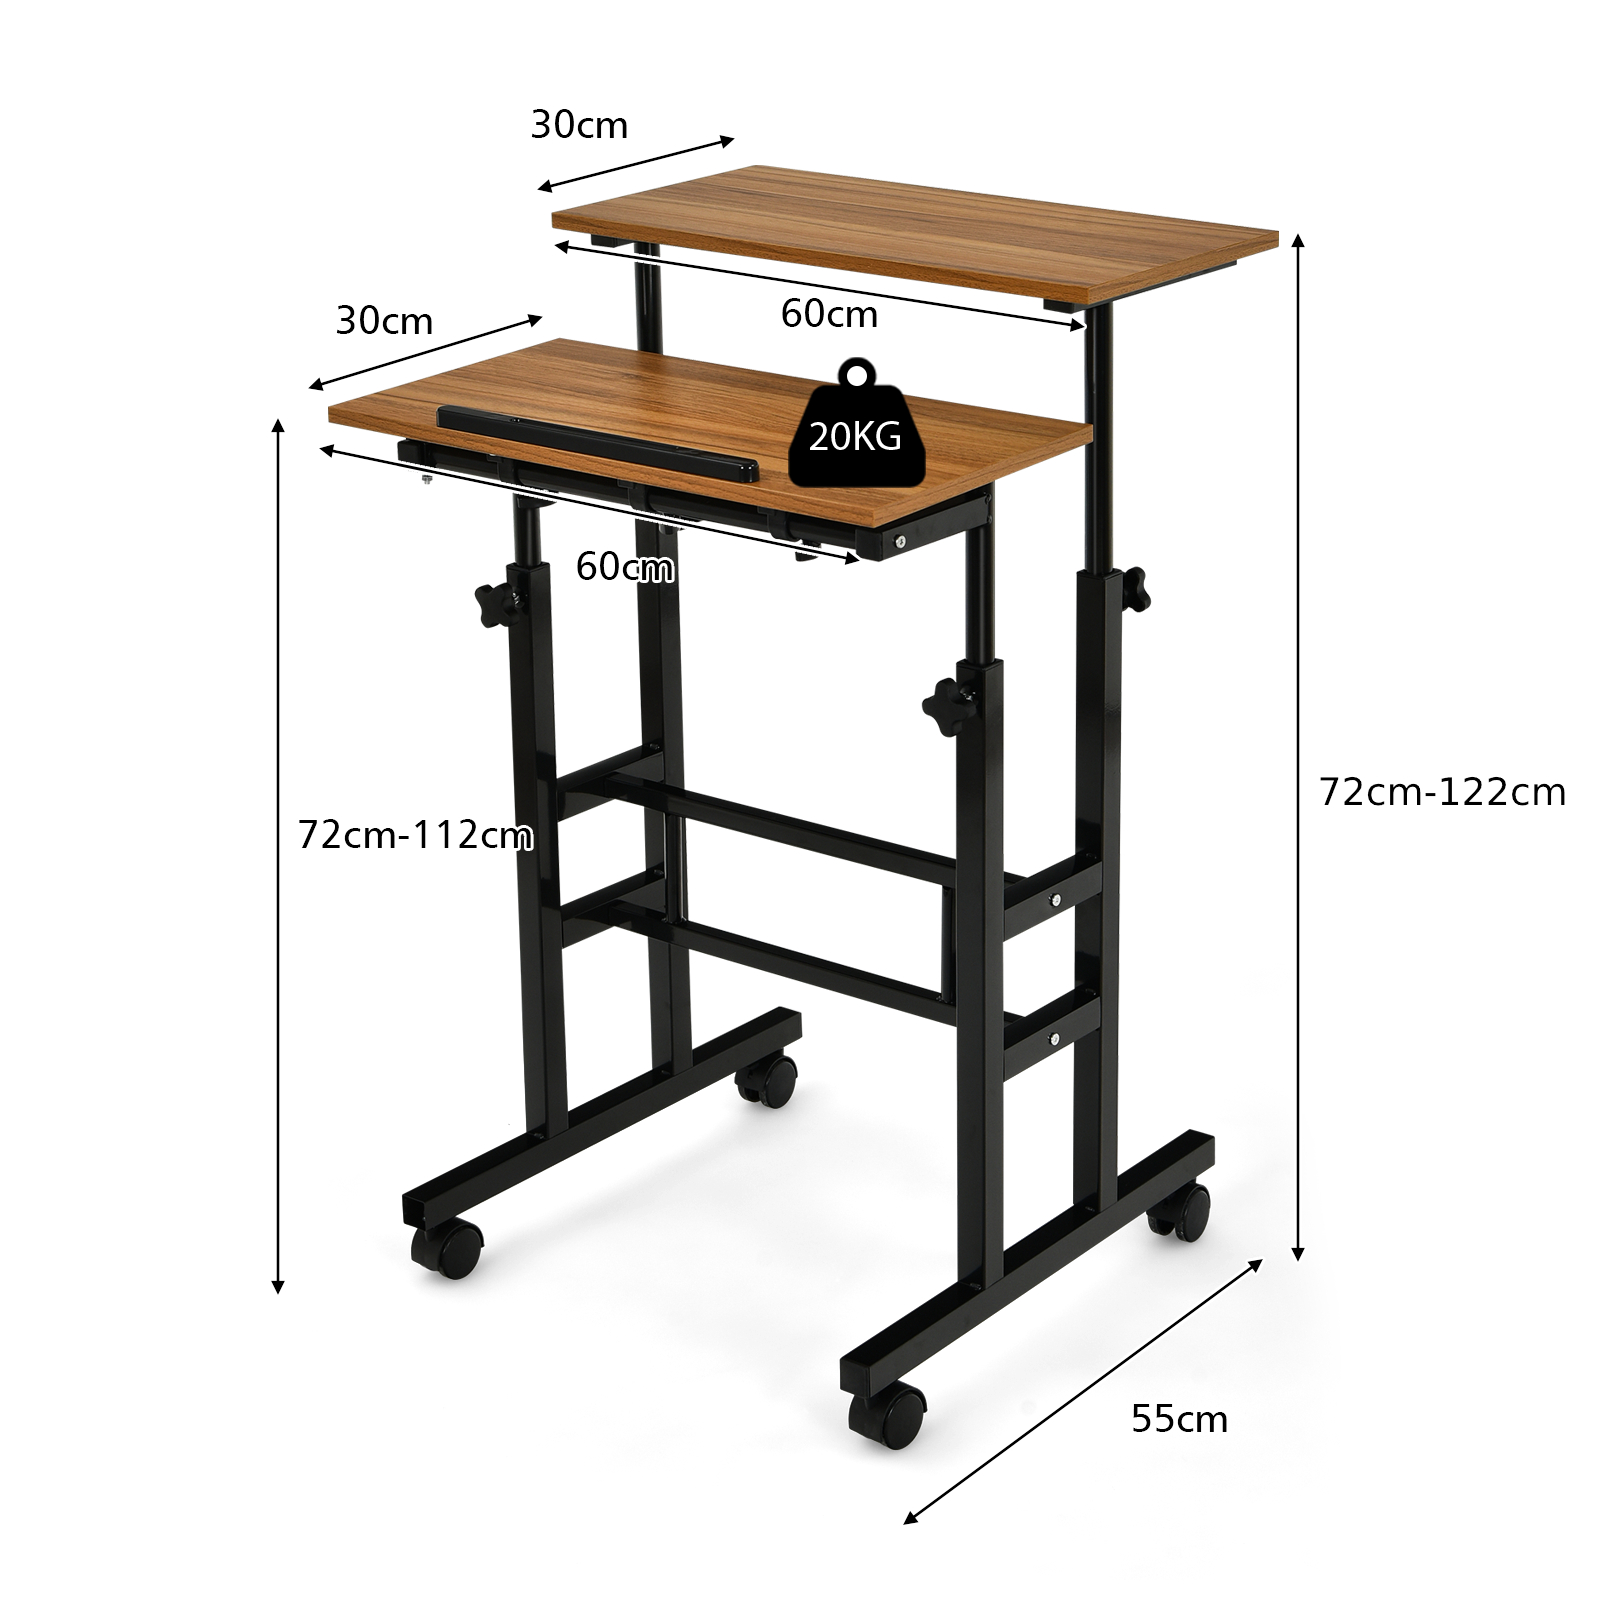 Adjustable_Standing_Desk_size-5-2.jpg